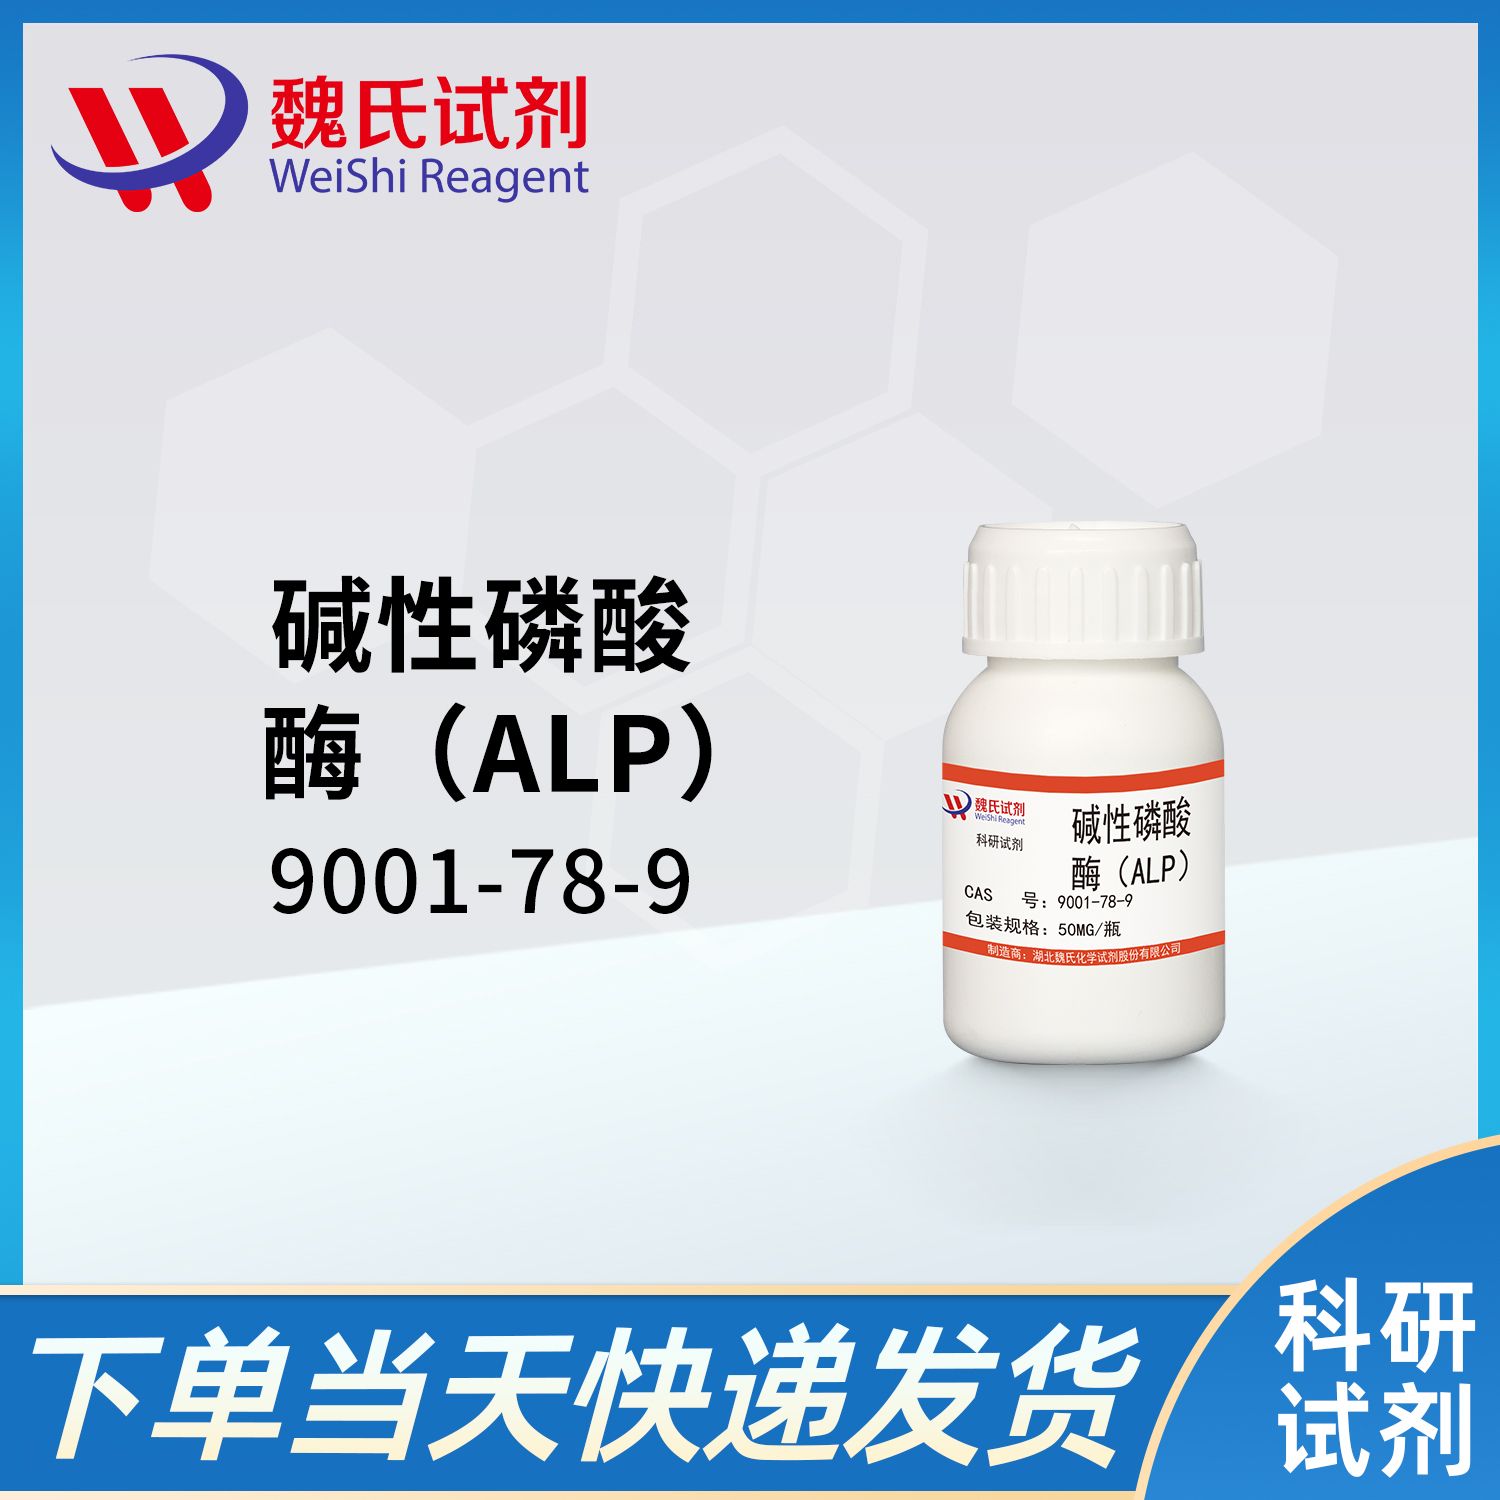 9001-78-9/碱性磷酸酯酶/Phosphatase, Alkaline (ALP)